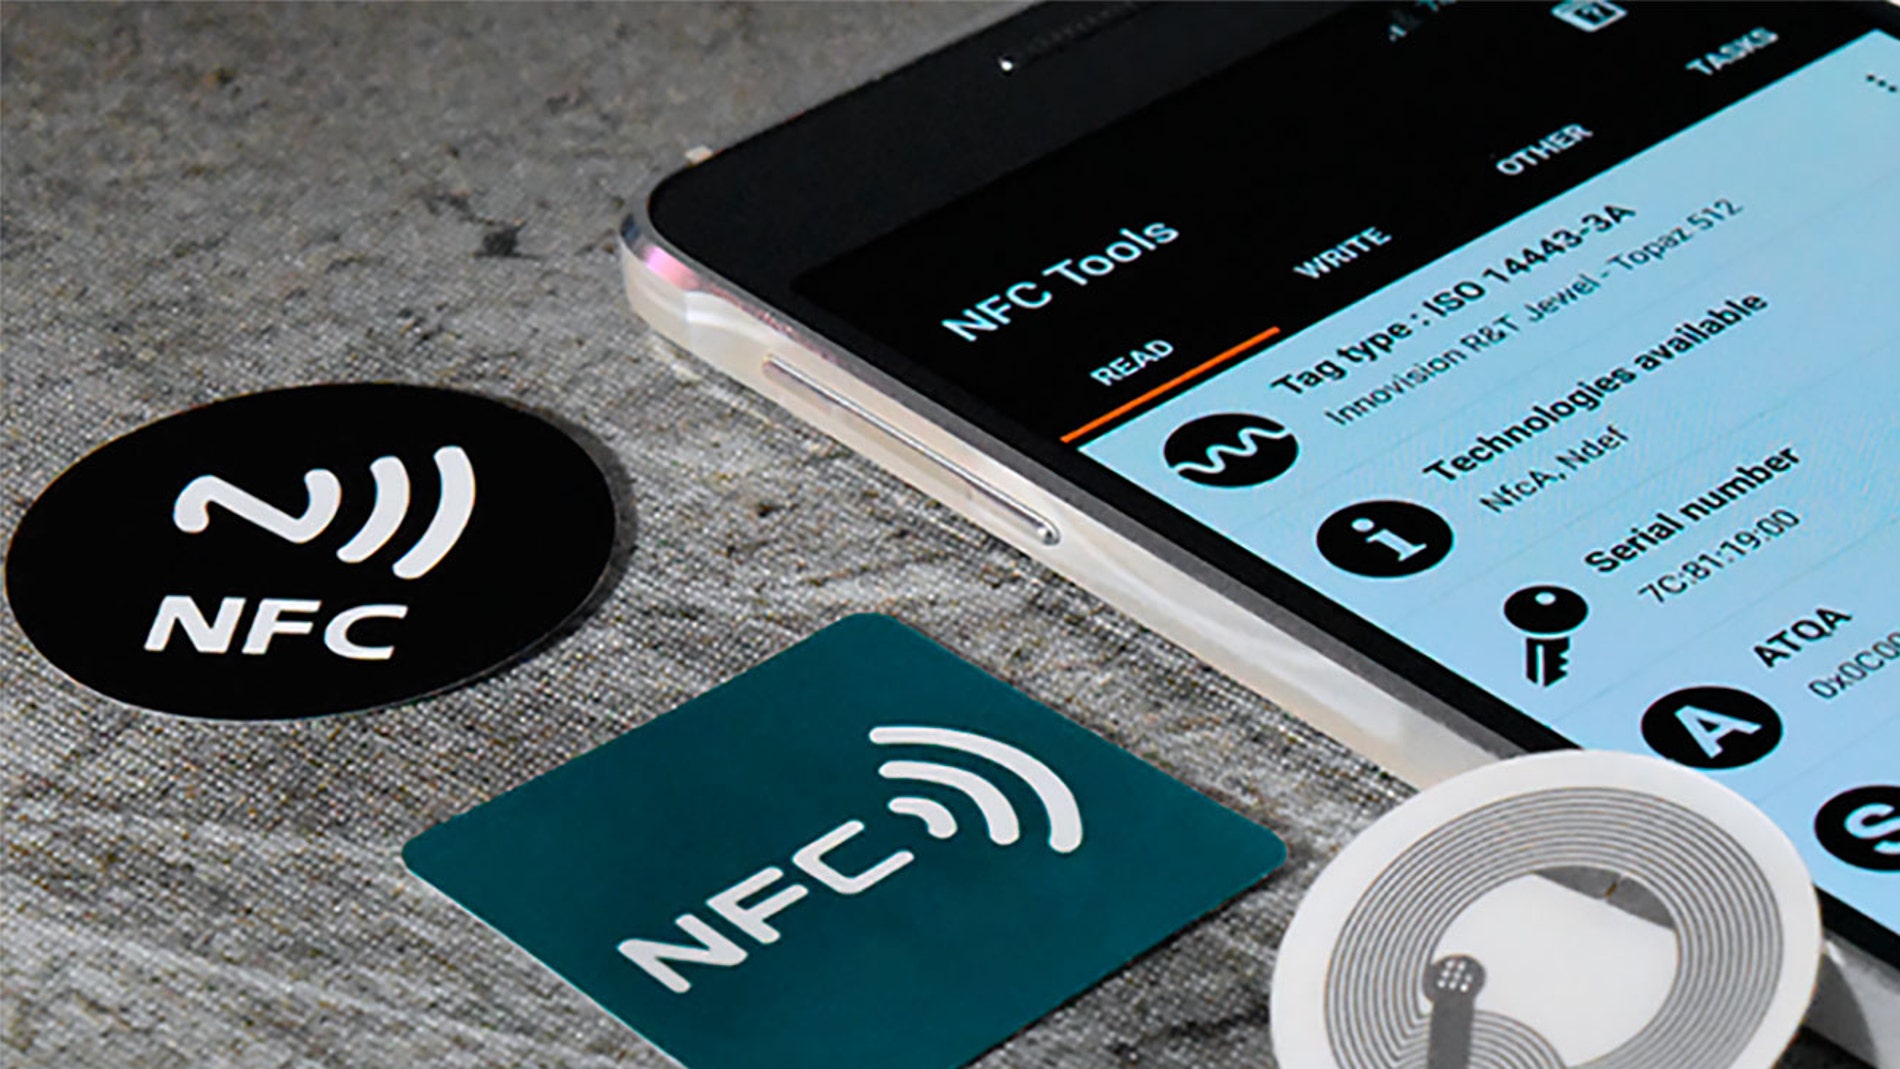 Todo lo que puedes hacer con el NFC de tu móvil en casa